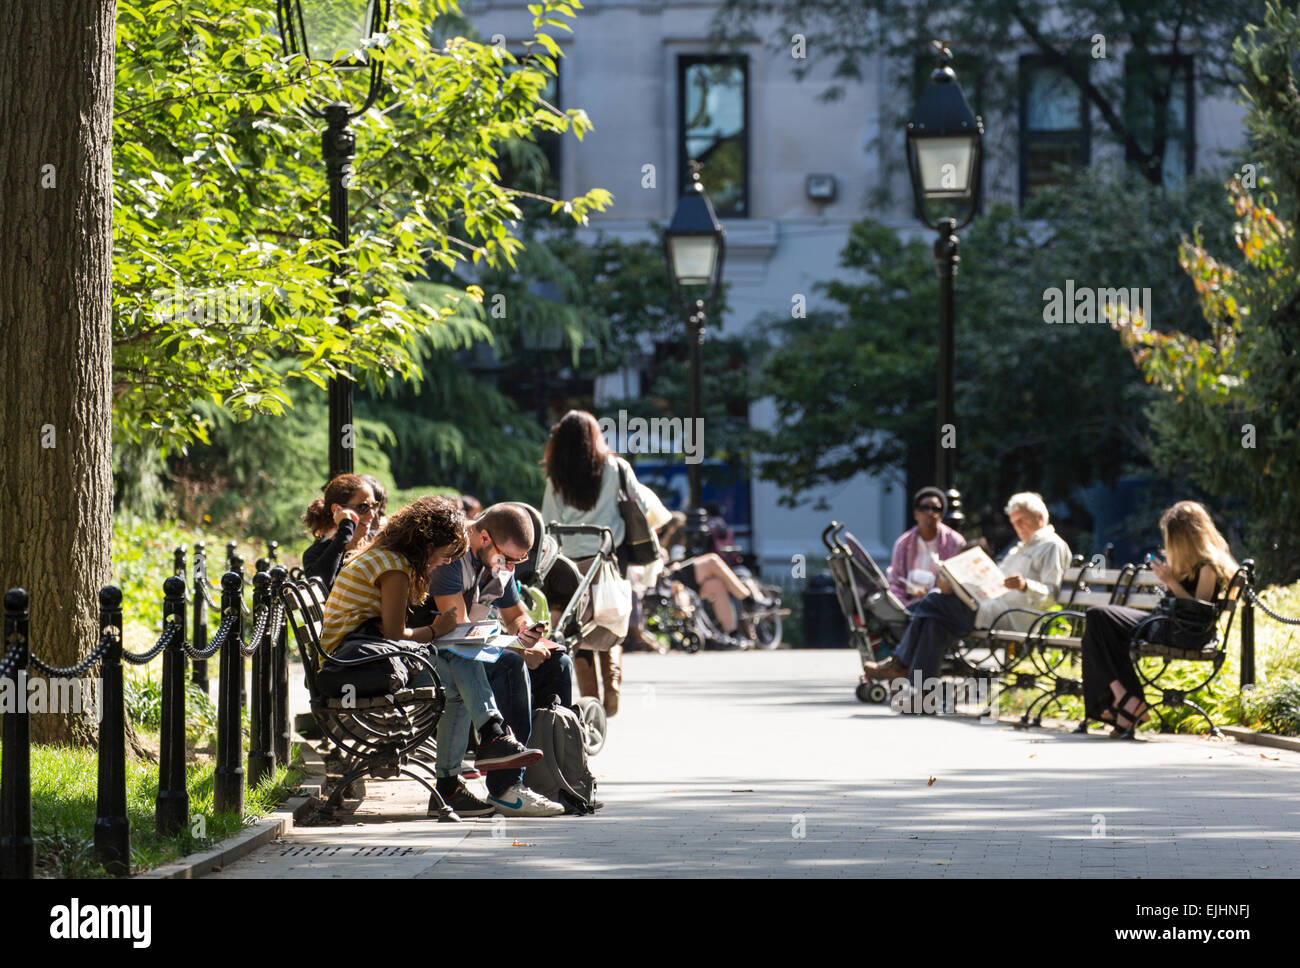 Washington Square Park, SoHo, New York City, USA Stock Photo